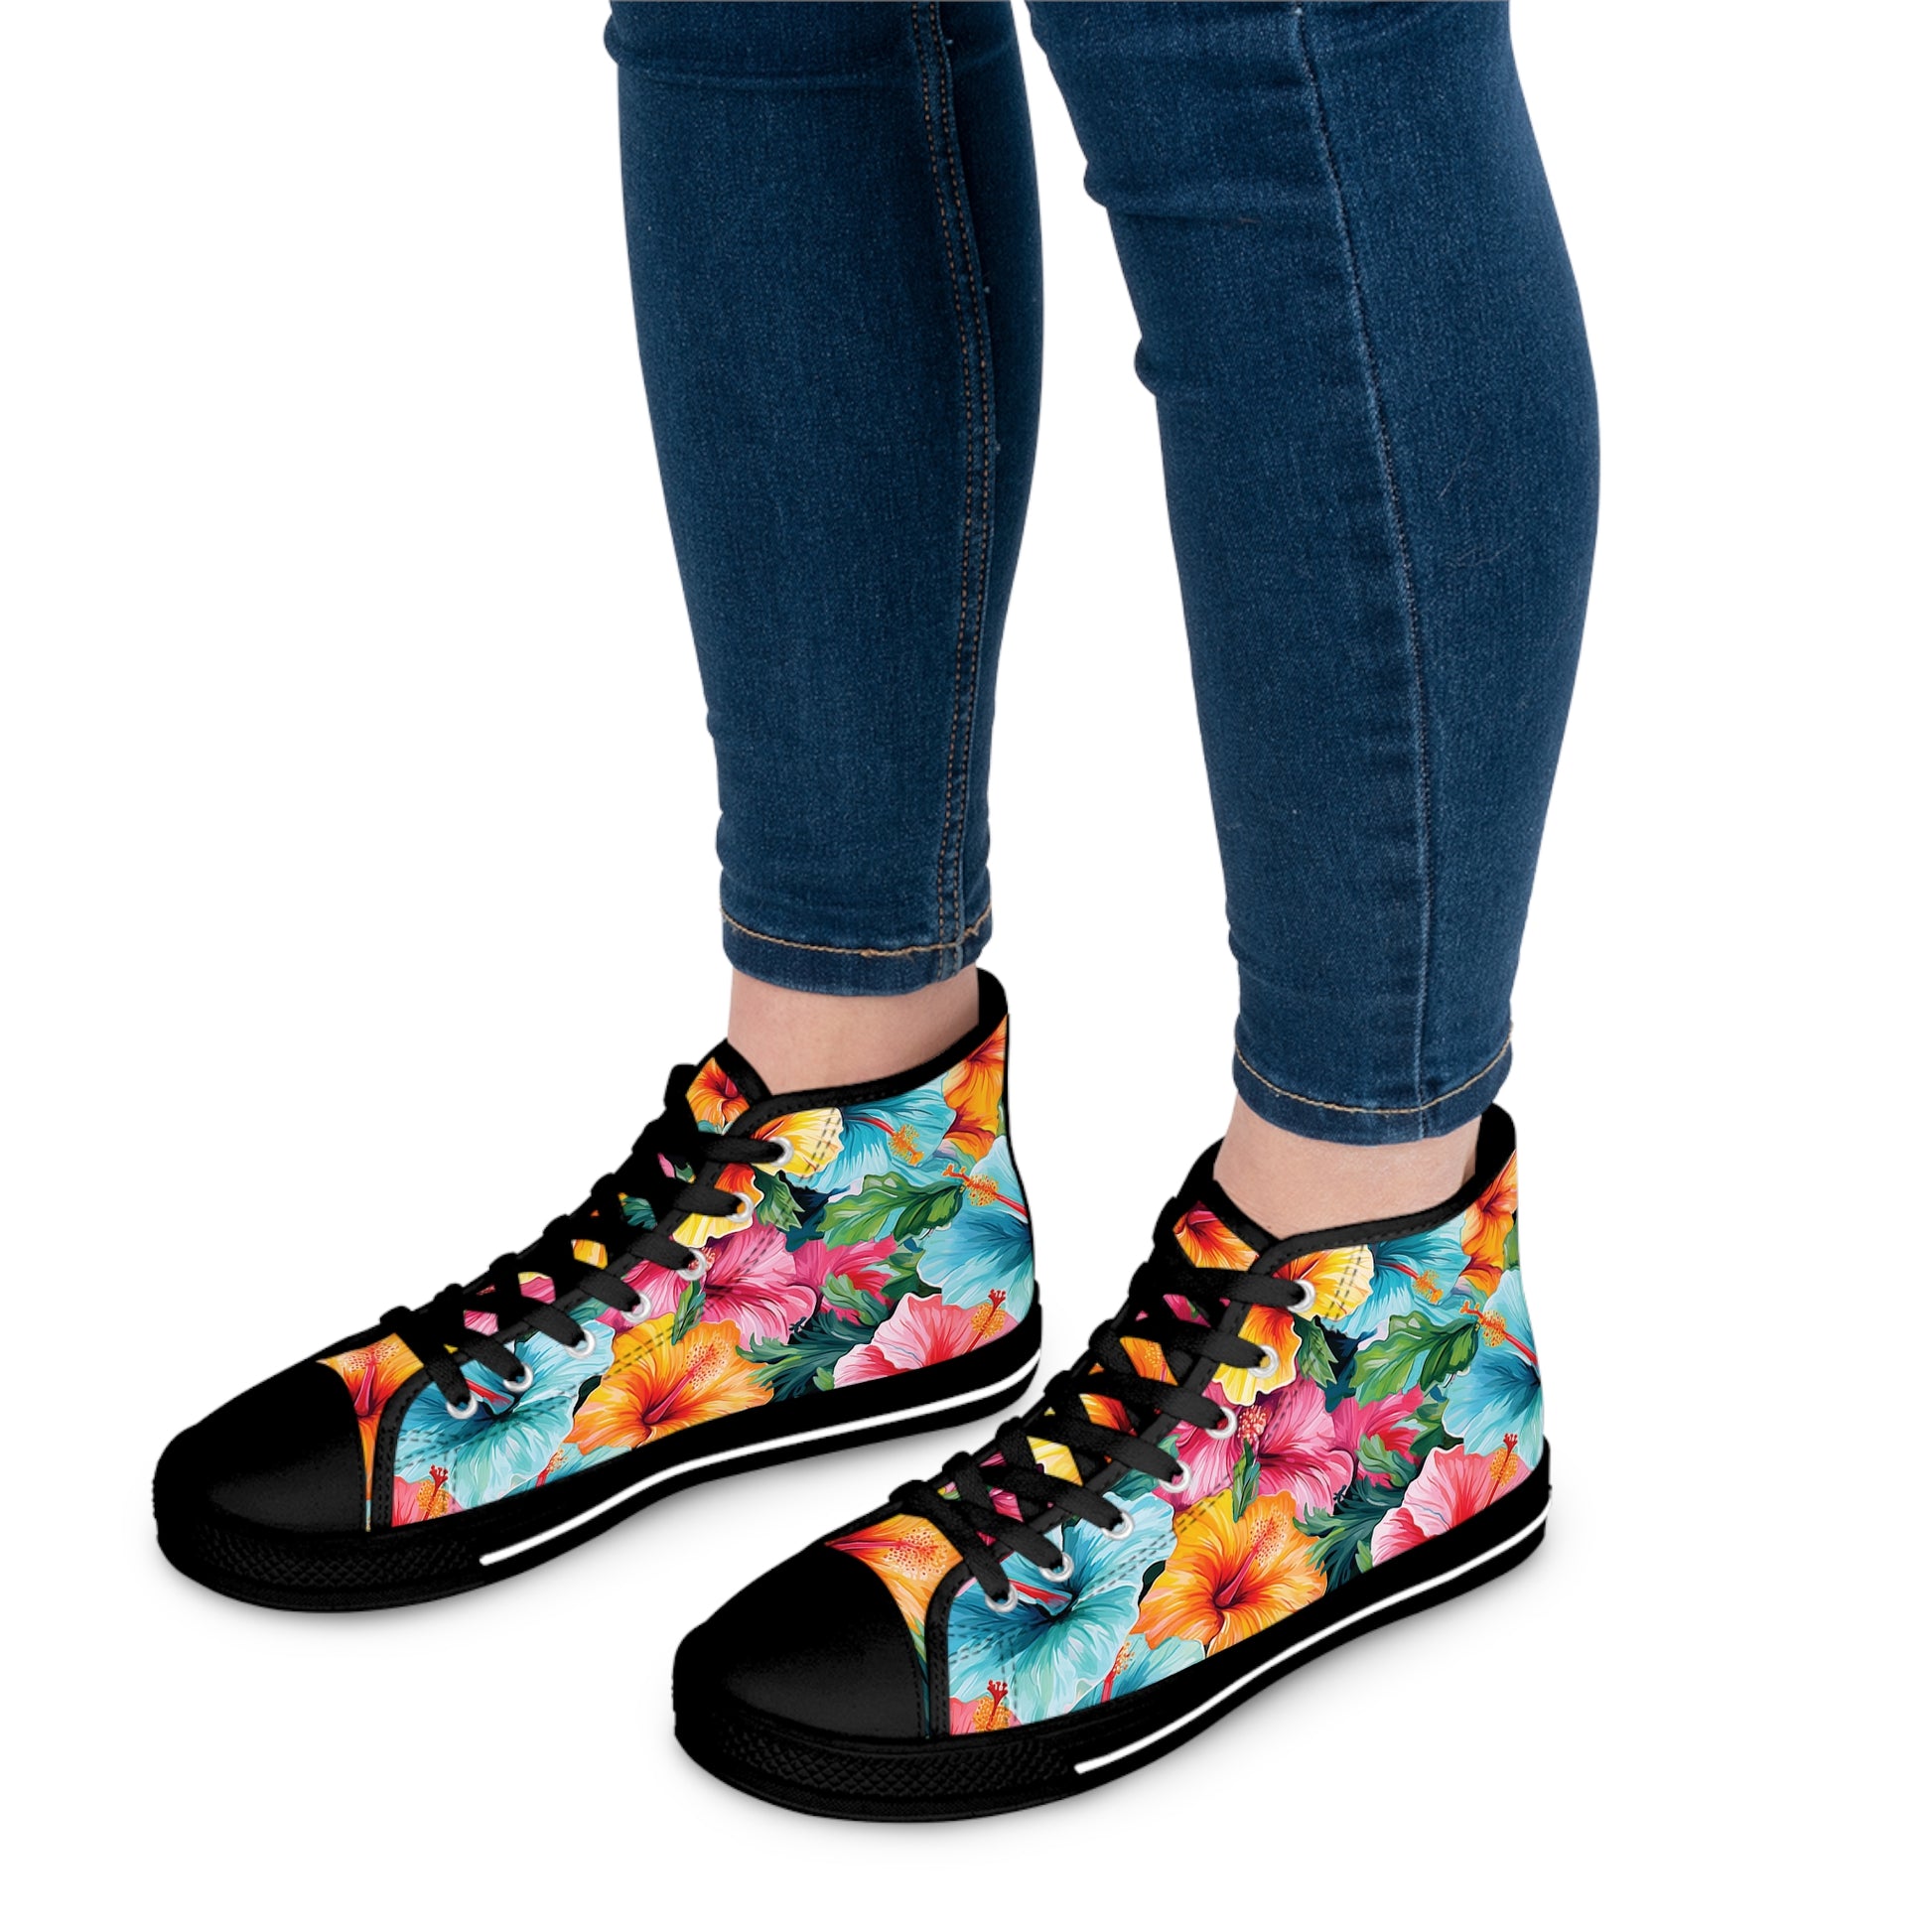 Watercolor Hibiscus (Light #2) Women's High-Top Sneakers (Black) by Studio Ten Design